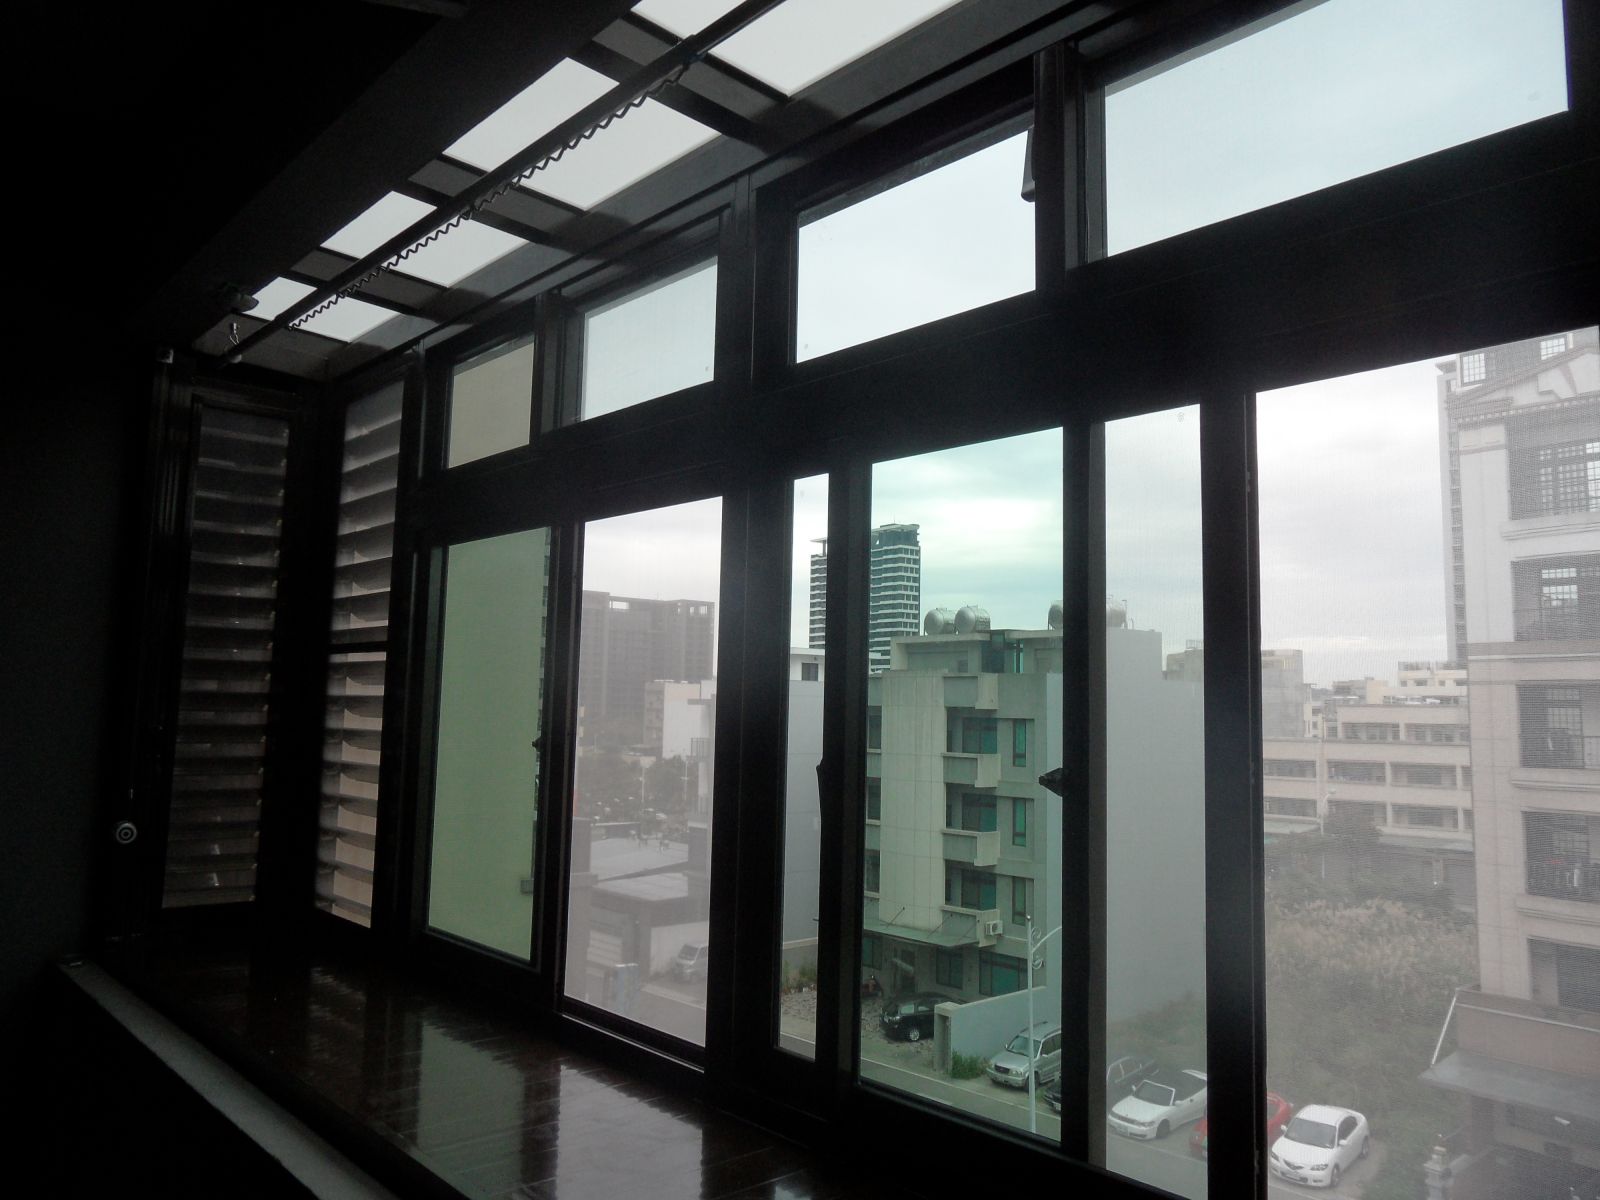 屋頂採用5+5膠合白膜玻璃.外凸於正面35公分,讓氣窗能隨時開啟保持通風.雨水不或潑進屋內